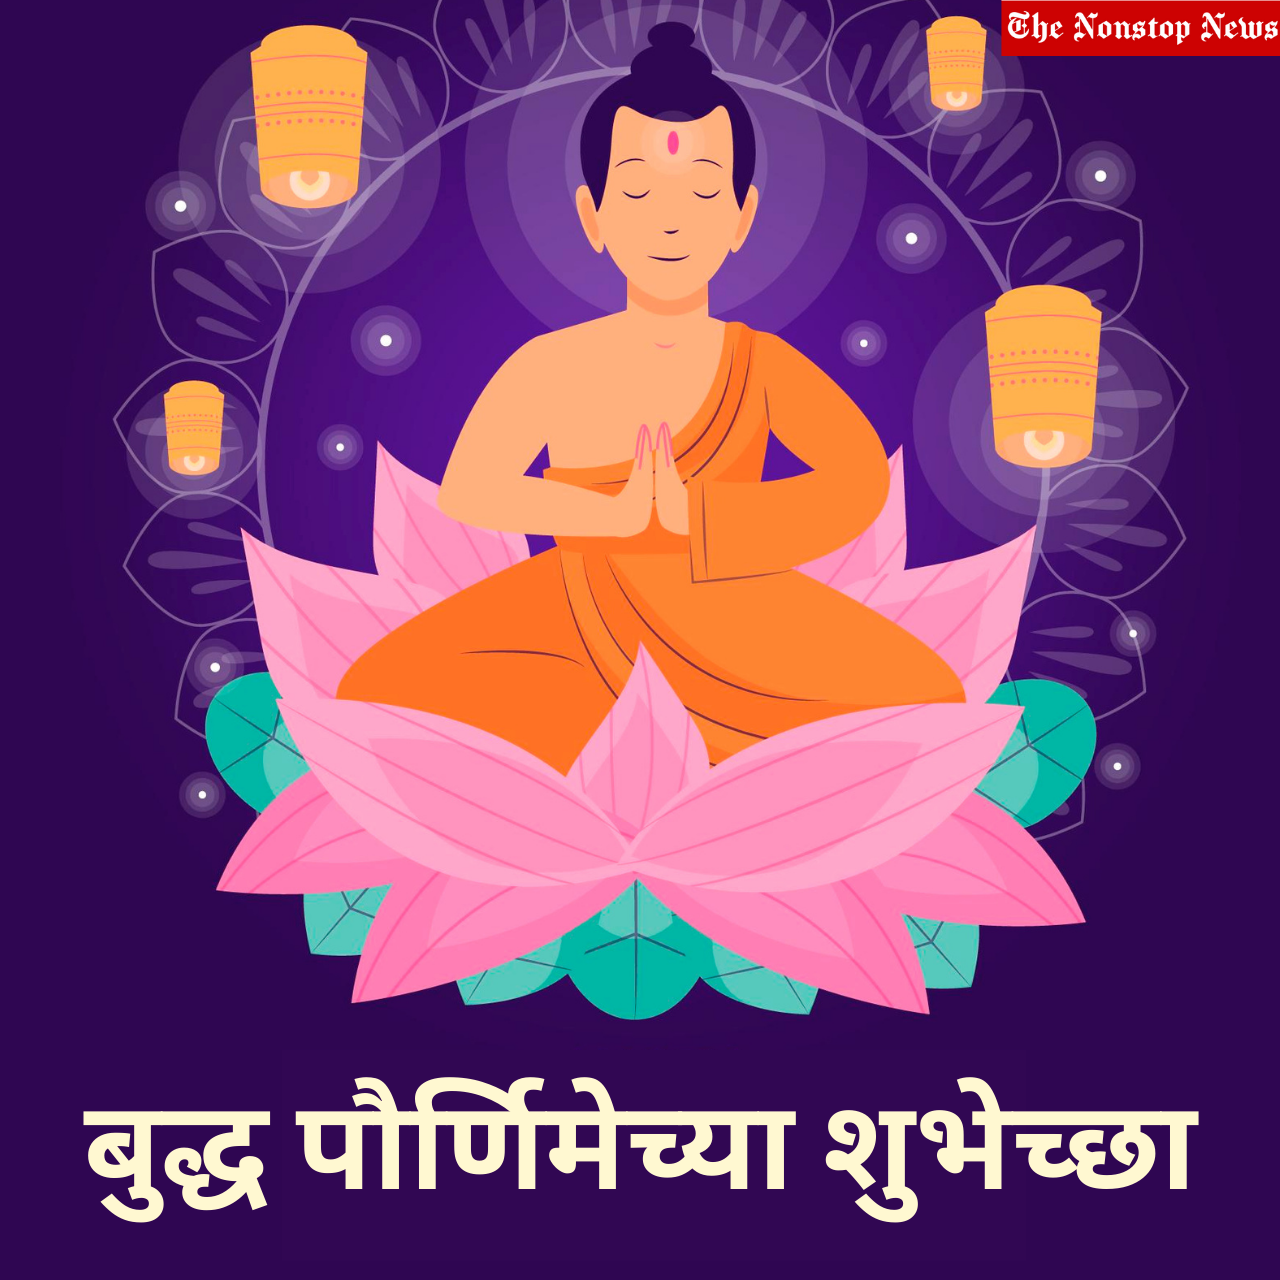 Happy Buddha Purnima 2022: Marathi Messages, Quotes, Greetings, Images, Shayari To Share